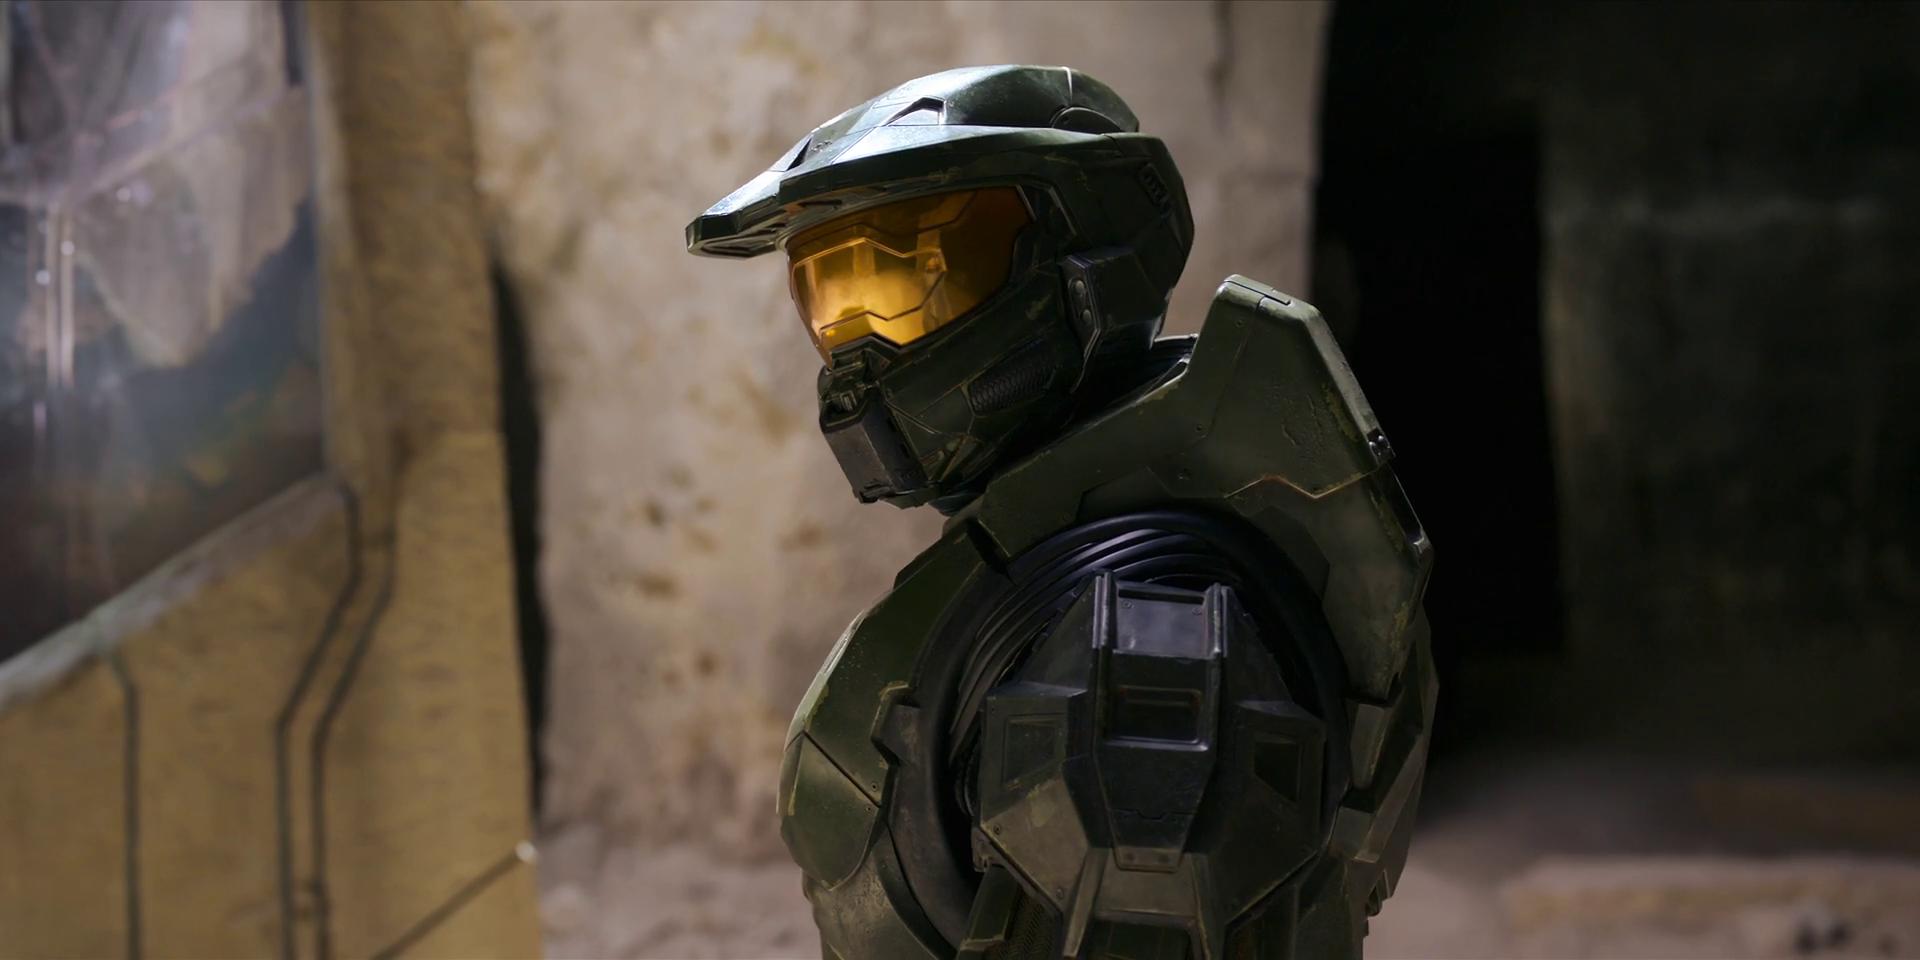 Paramount+ la rompe con estreno de 'Halo', es la serie más vista